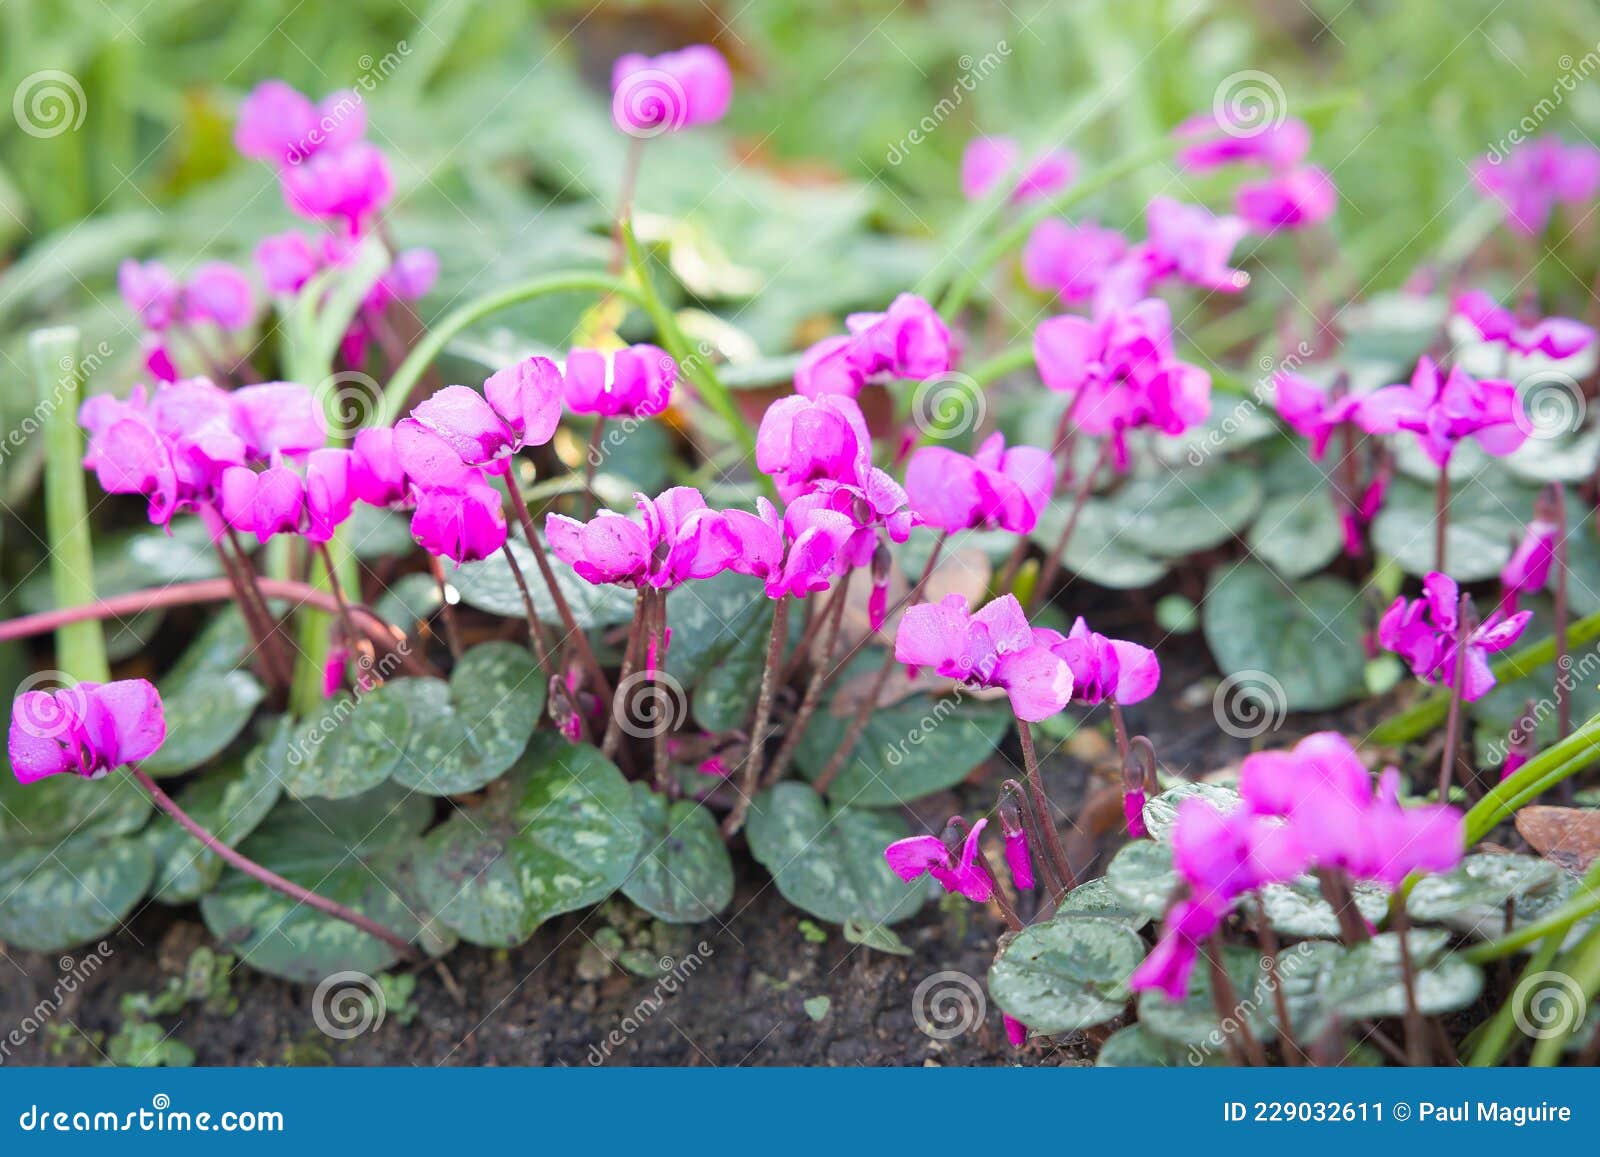 Ciclamías En El Jardín Británico De Invierno. Flores De Cyclamen Coum  Imagen de archivo - Imagen de magenta, rosa: 229032611